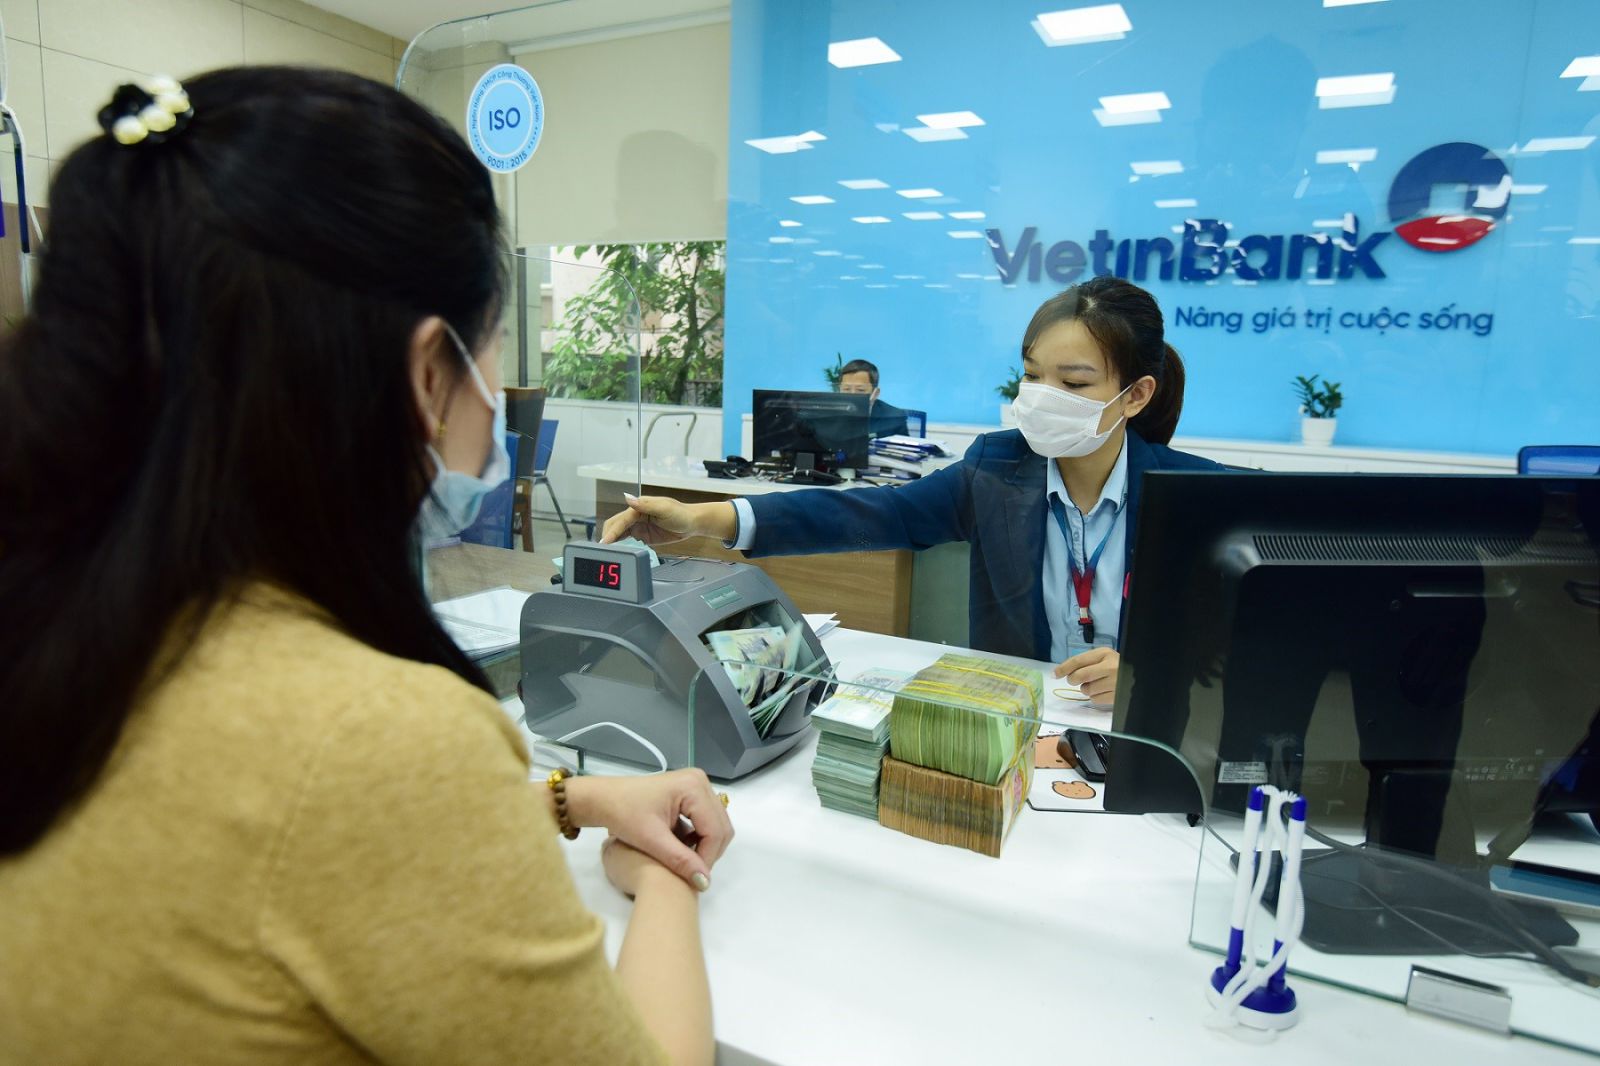 Vietinbank cũng rao bán nhiều khoản nợ được đảm bảo bằng bất động sản.